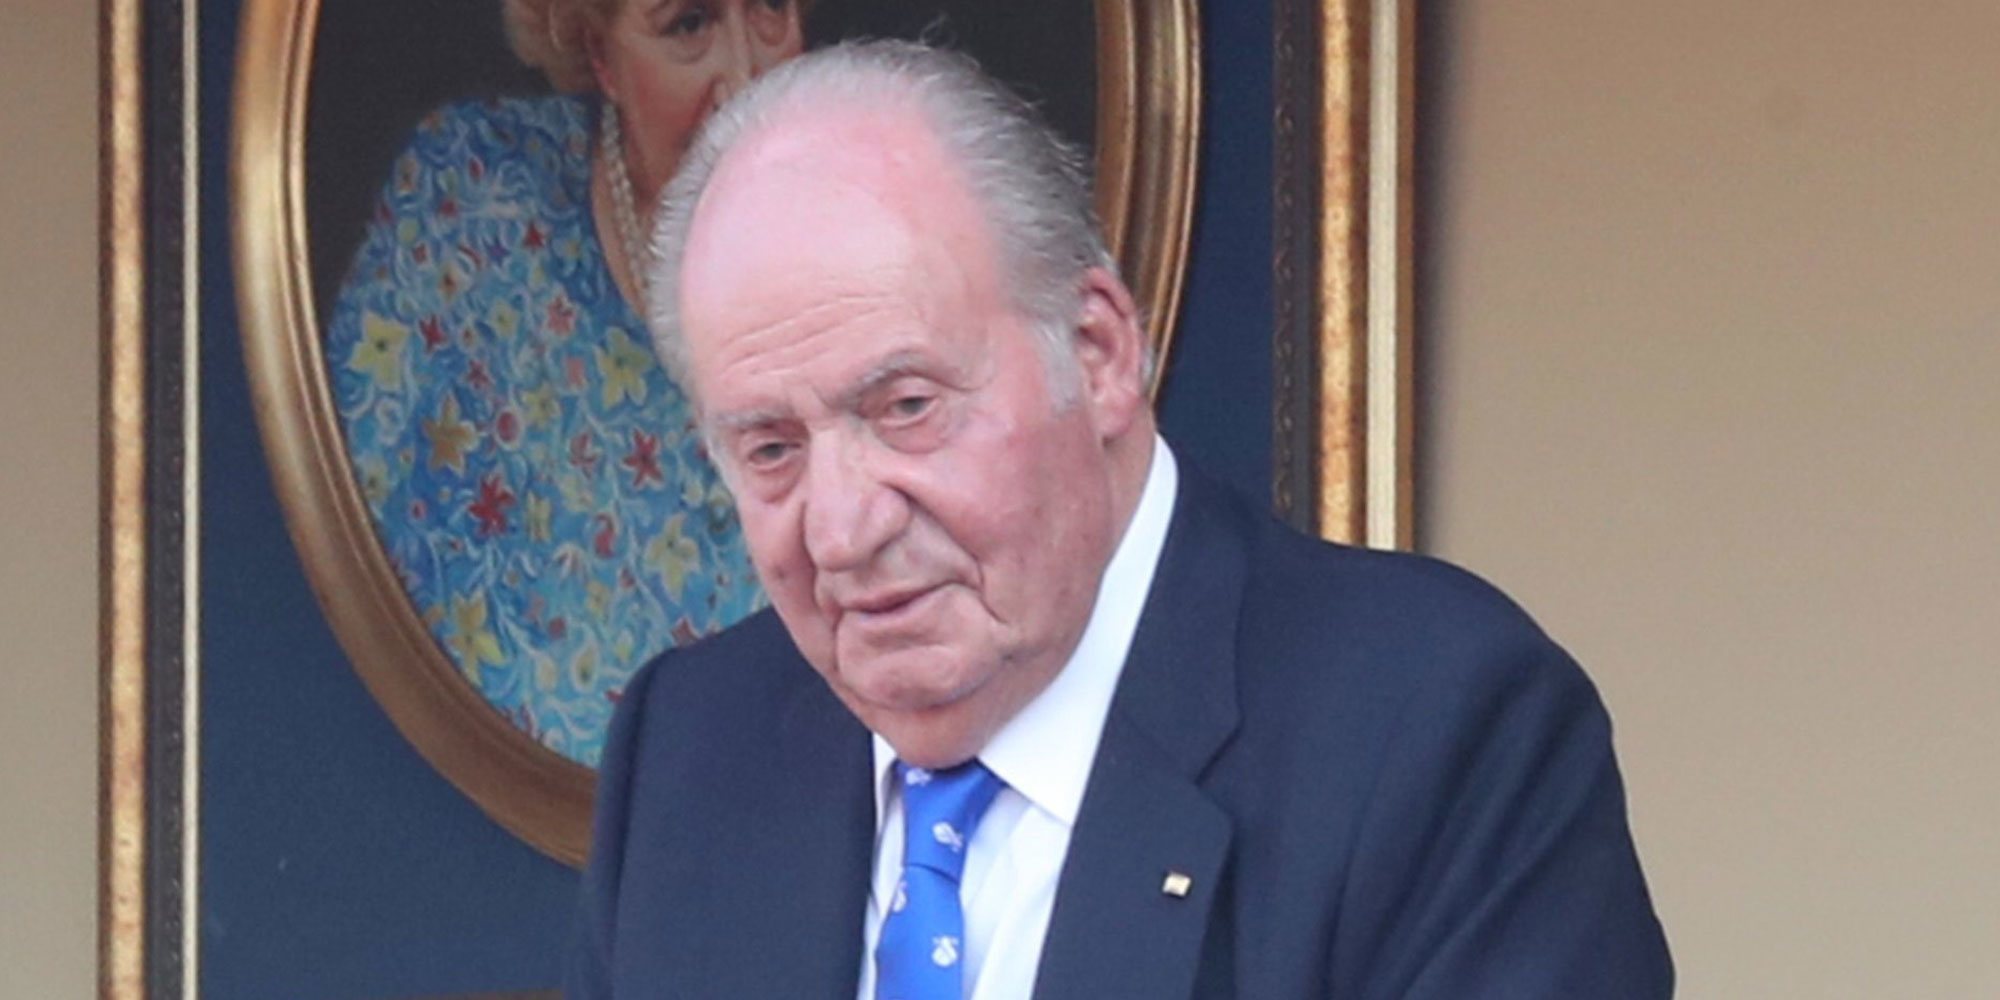 El Rey Juan Carlos estaría esperando a la resolución de su investigación para tomar una decisión